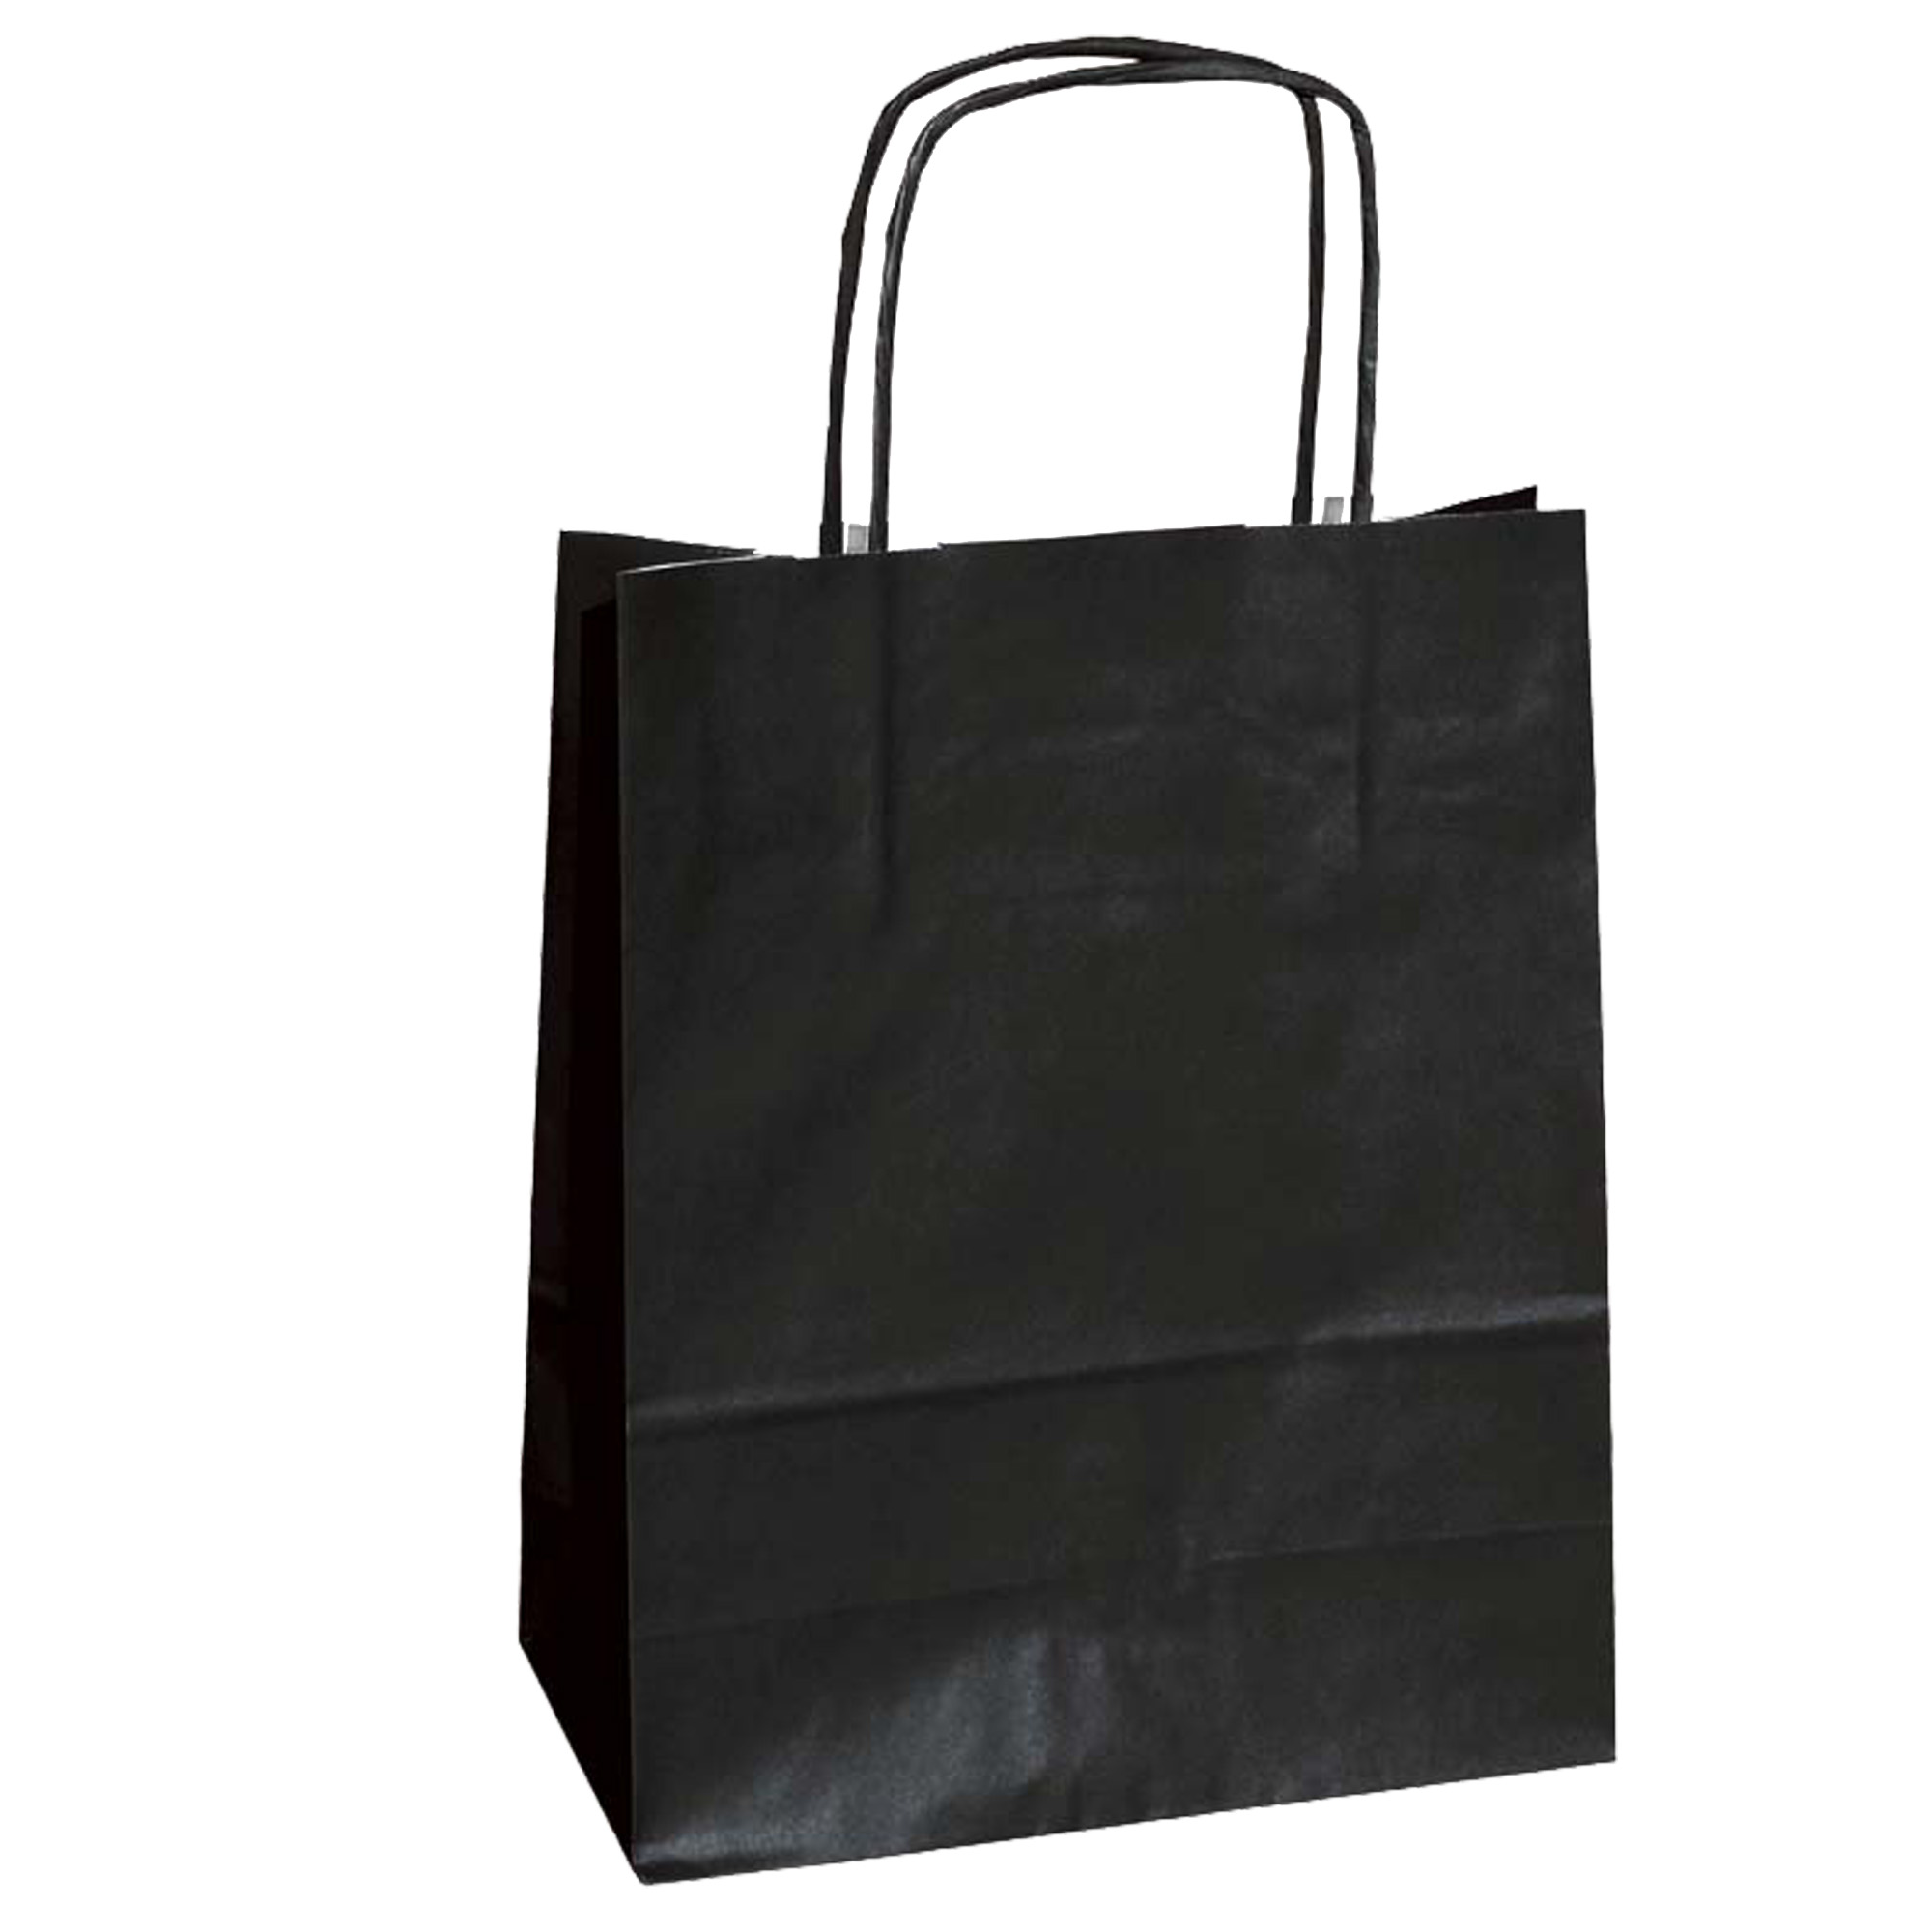 Shopper Twisted - maniglie cordino - 22 x 10 x 29 cm - carta kraft - nero -  Mainetti Bags - conf. 25 pezzi su